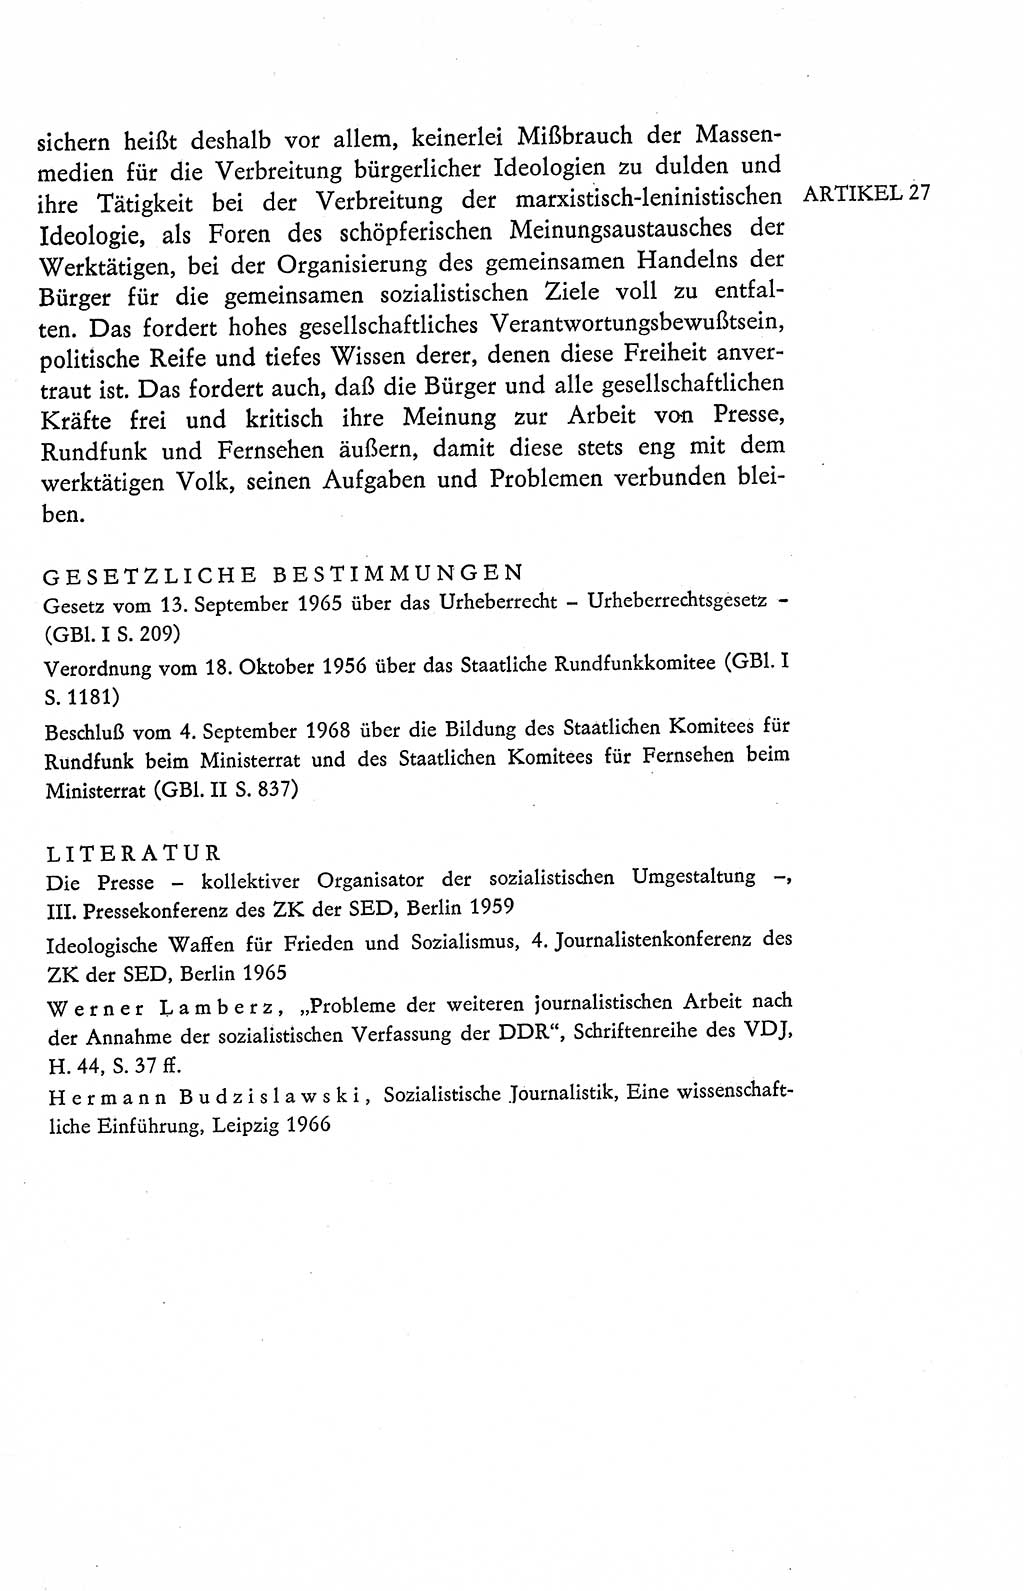 Verfassung der Deutschen Demokratischen Republik (DDR), Dokumente, Kommentar 1969, Band 2, Seite 111 (Verf. DDR Dok. Komm. 1969, Bd. 2, S. 111)